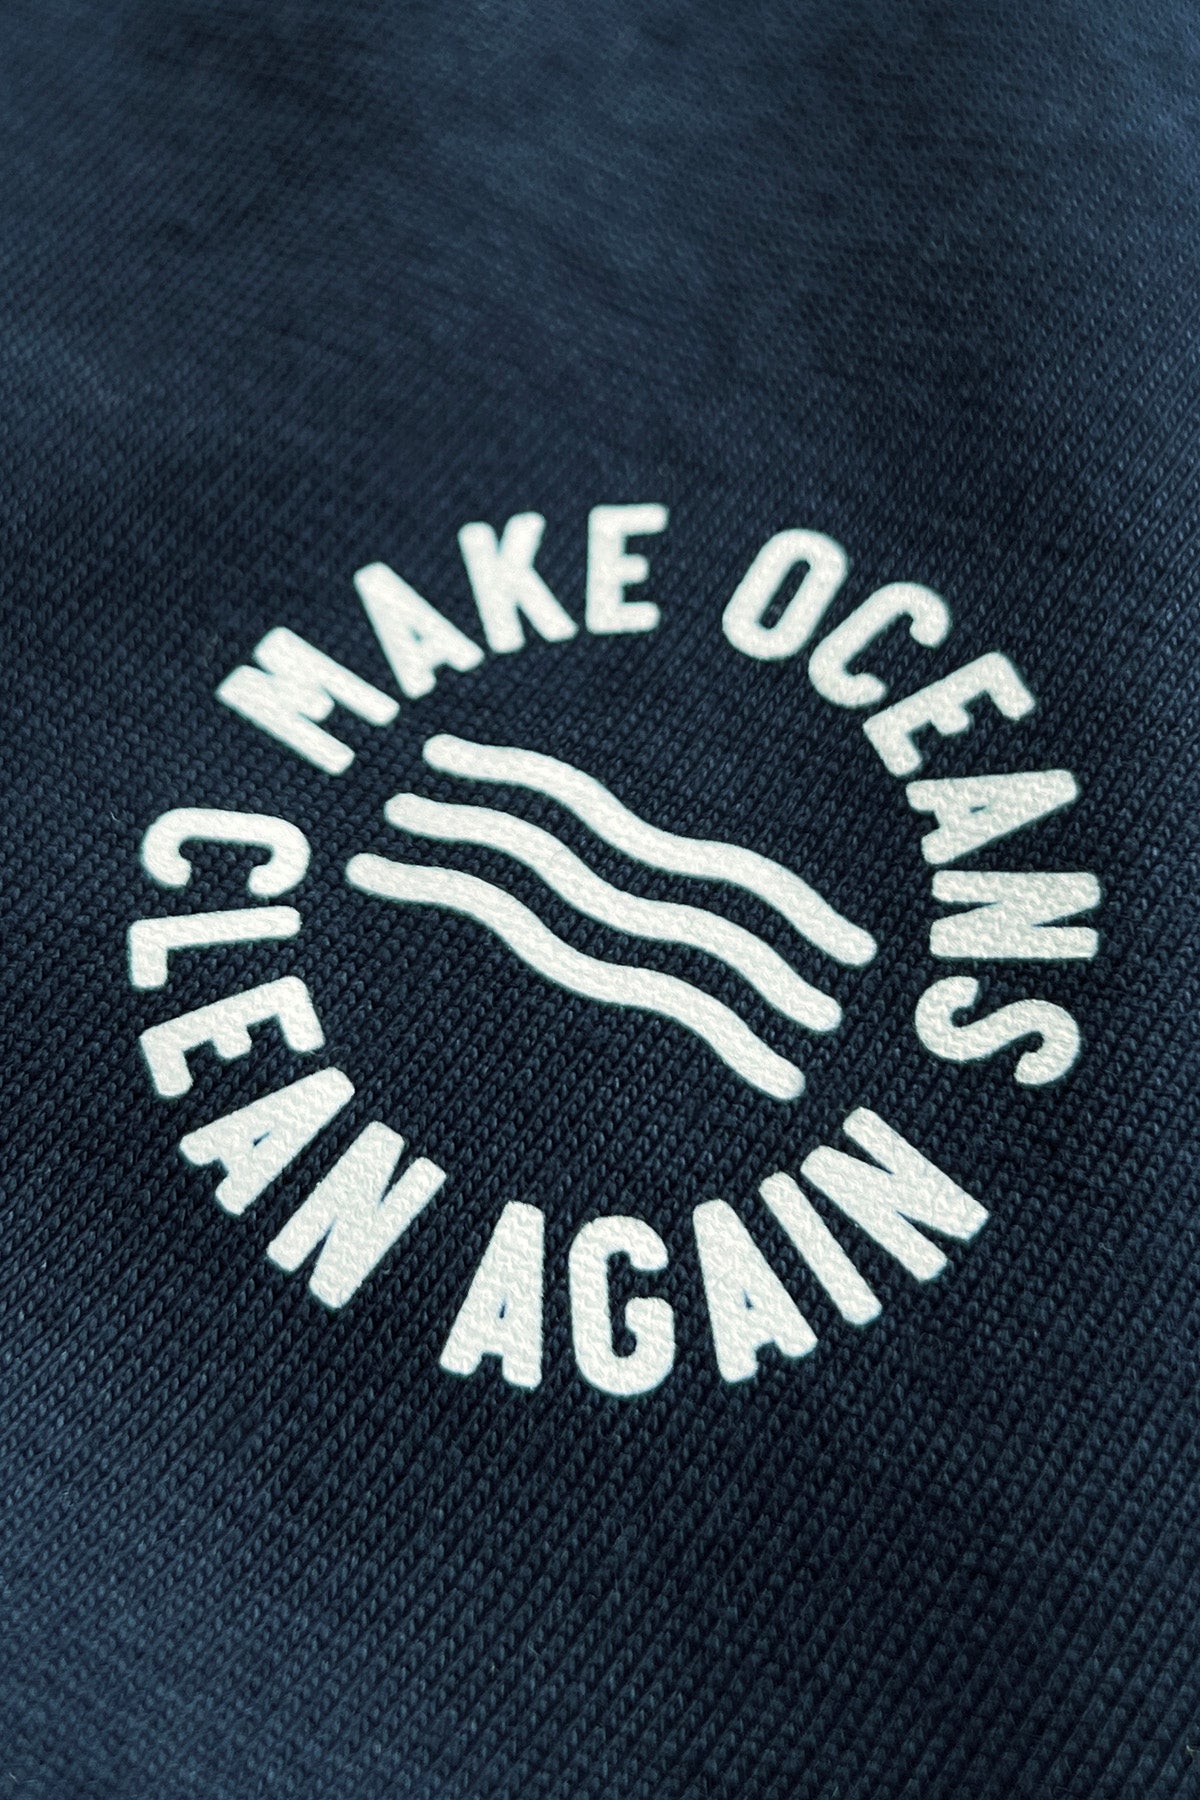 Tee "Make Oceans Clean Again"